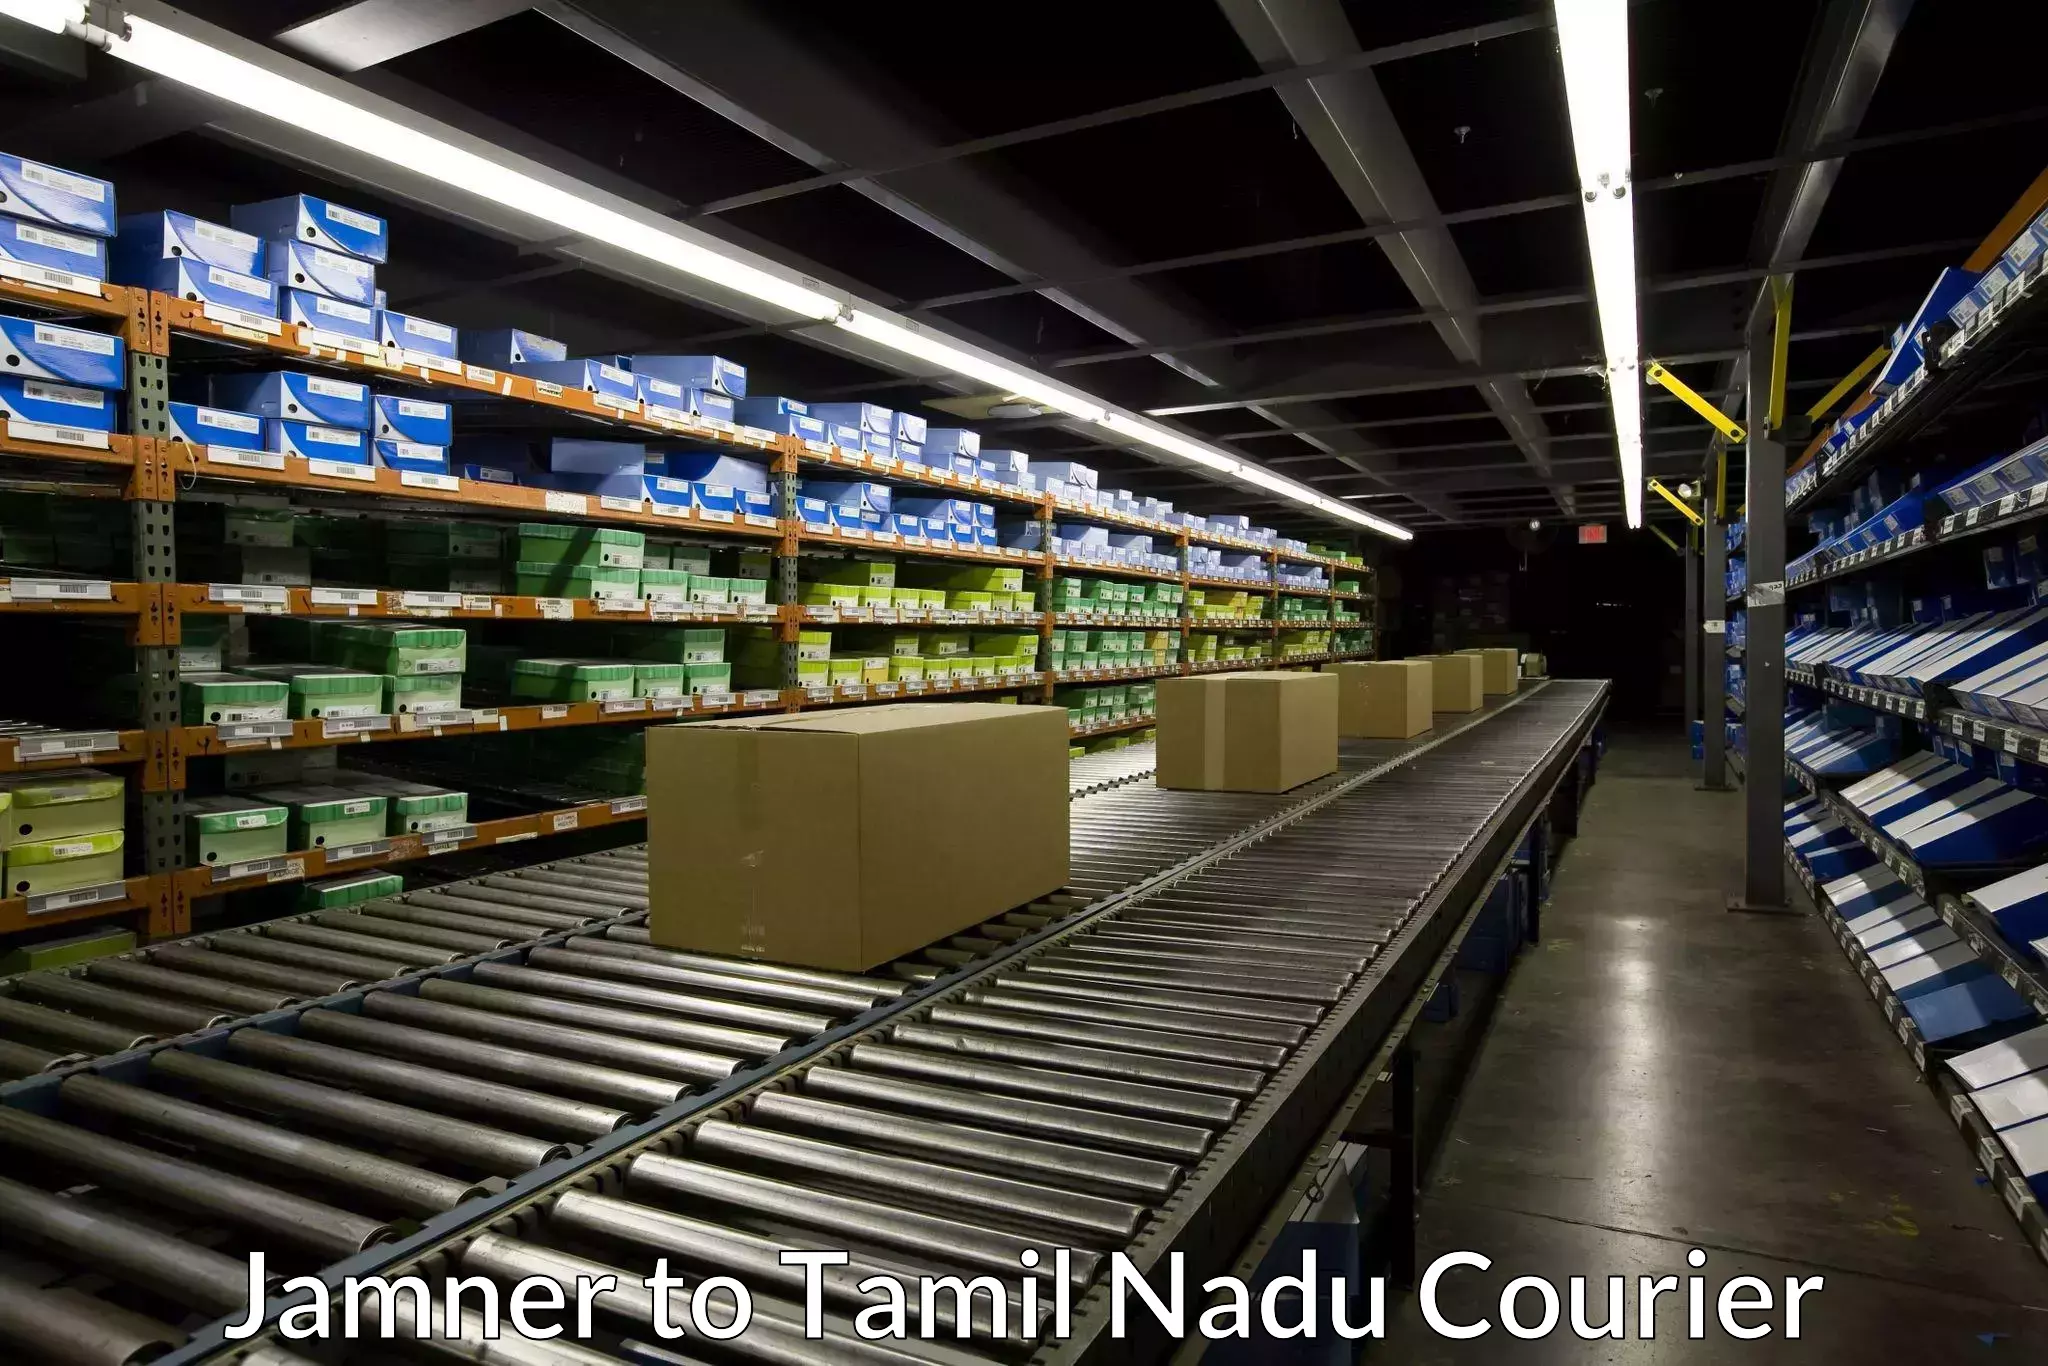 Same-day delivery options Jamner to Tamil Nadu